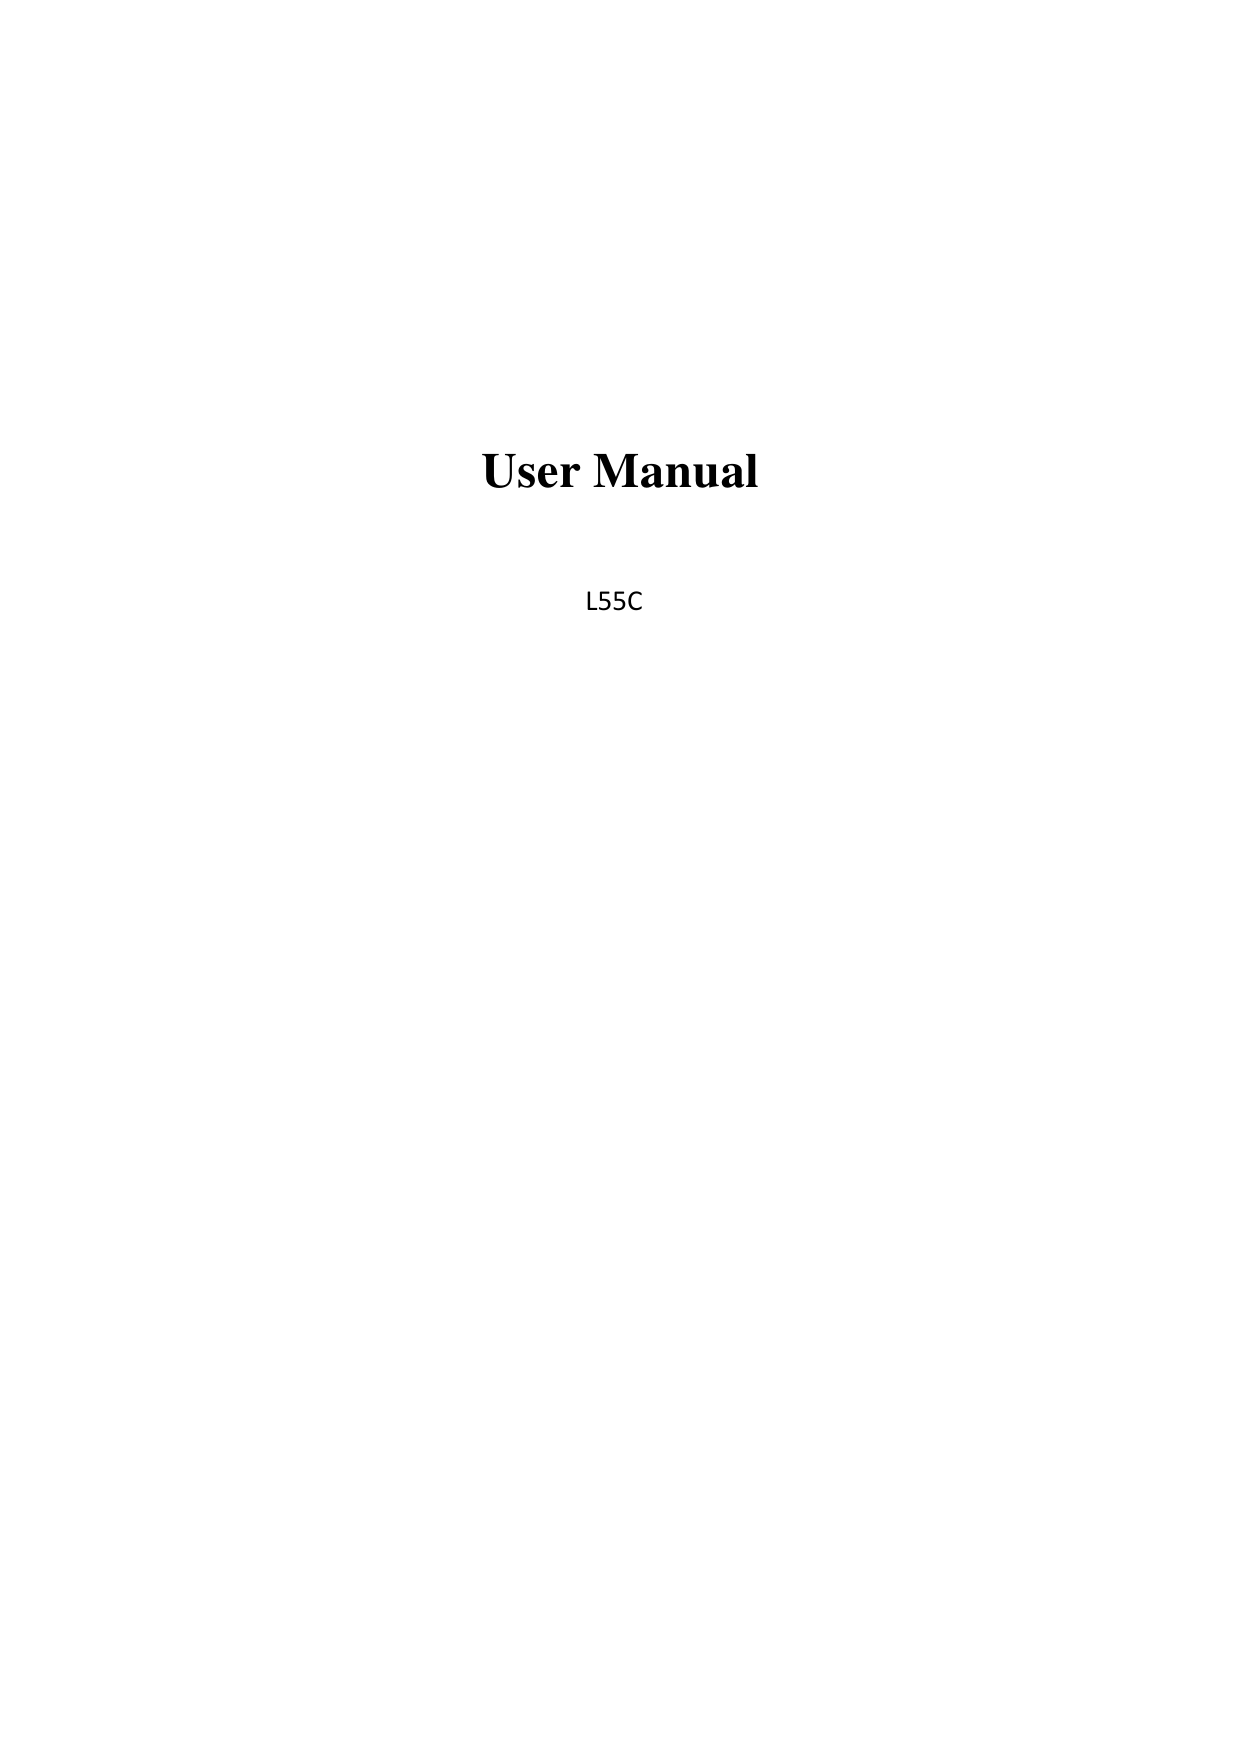     User Manual  L55C                     